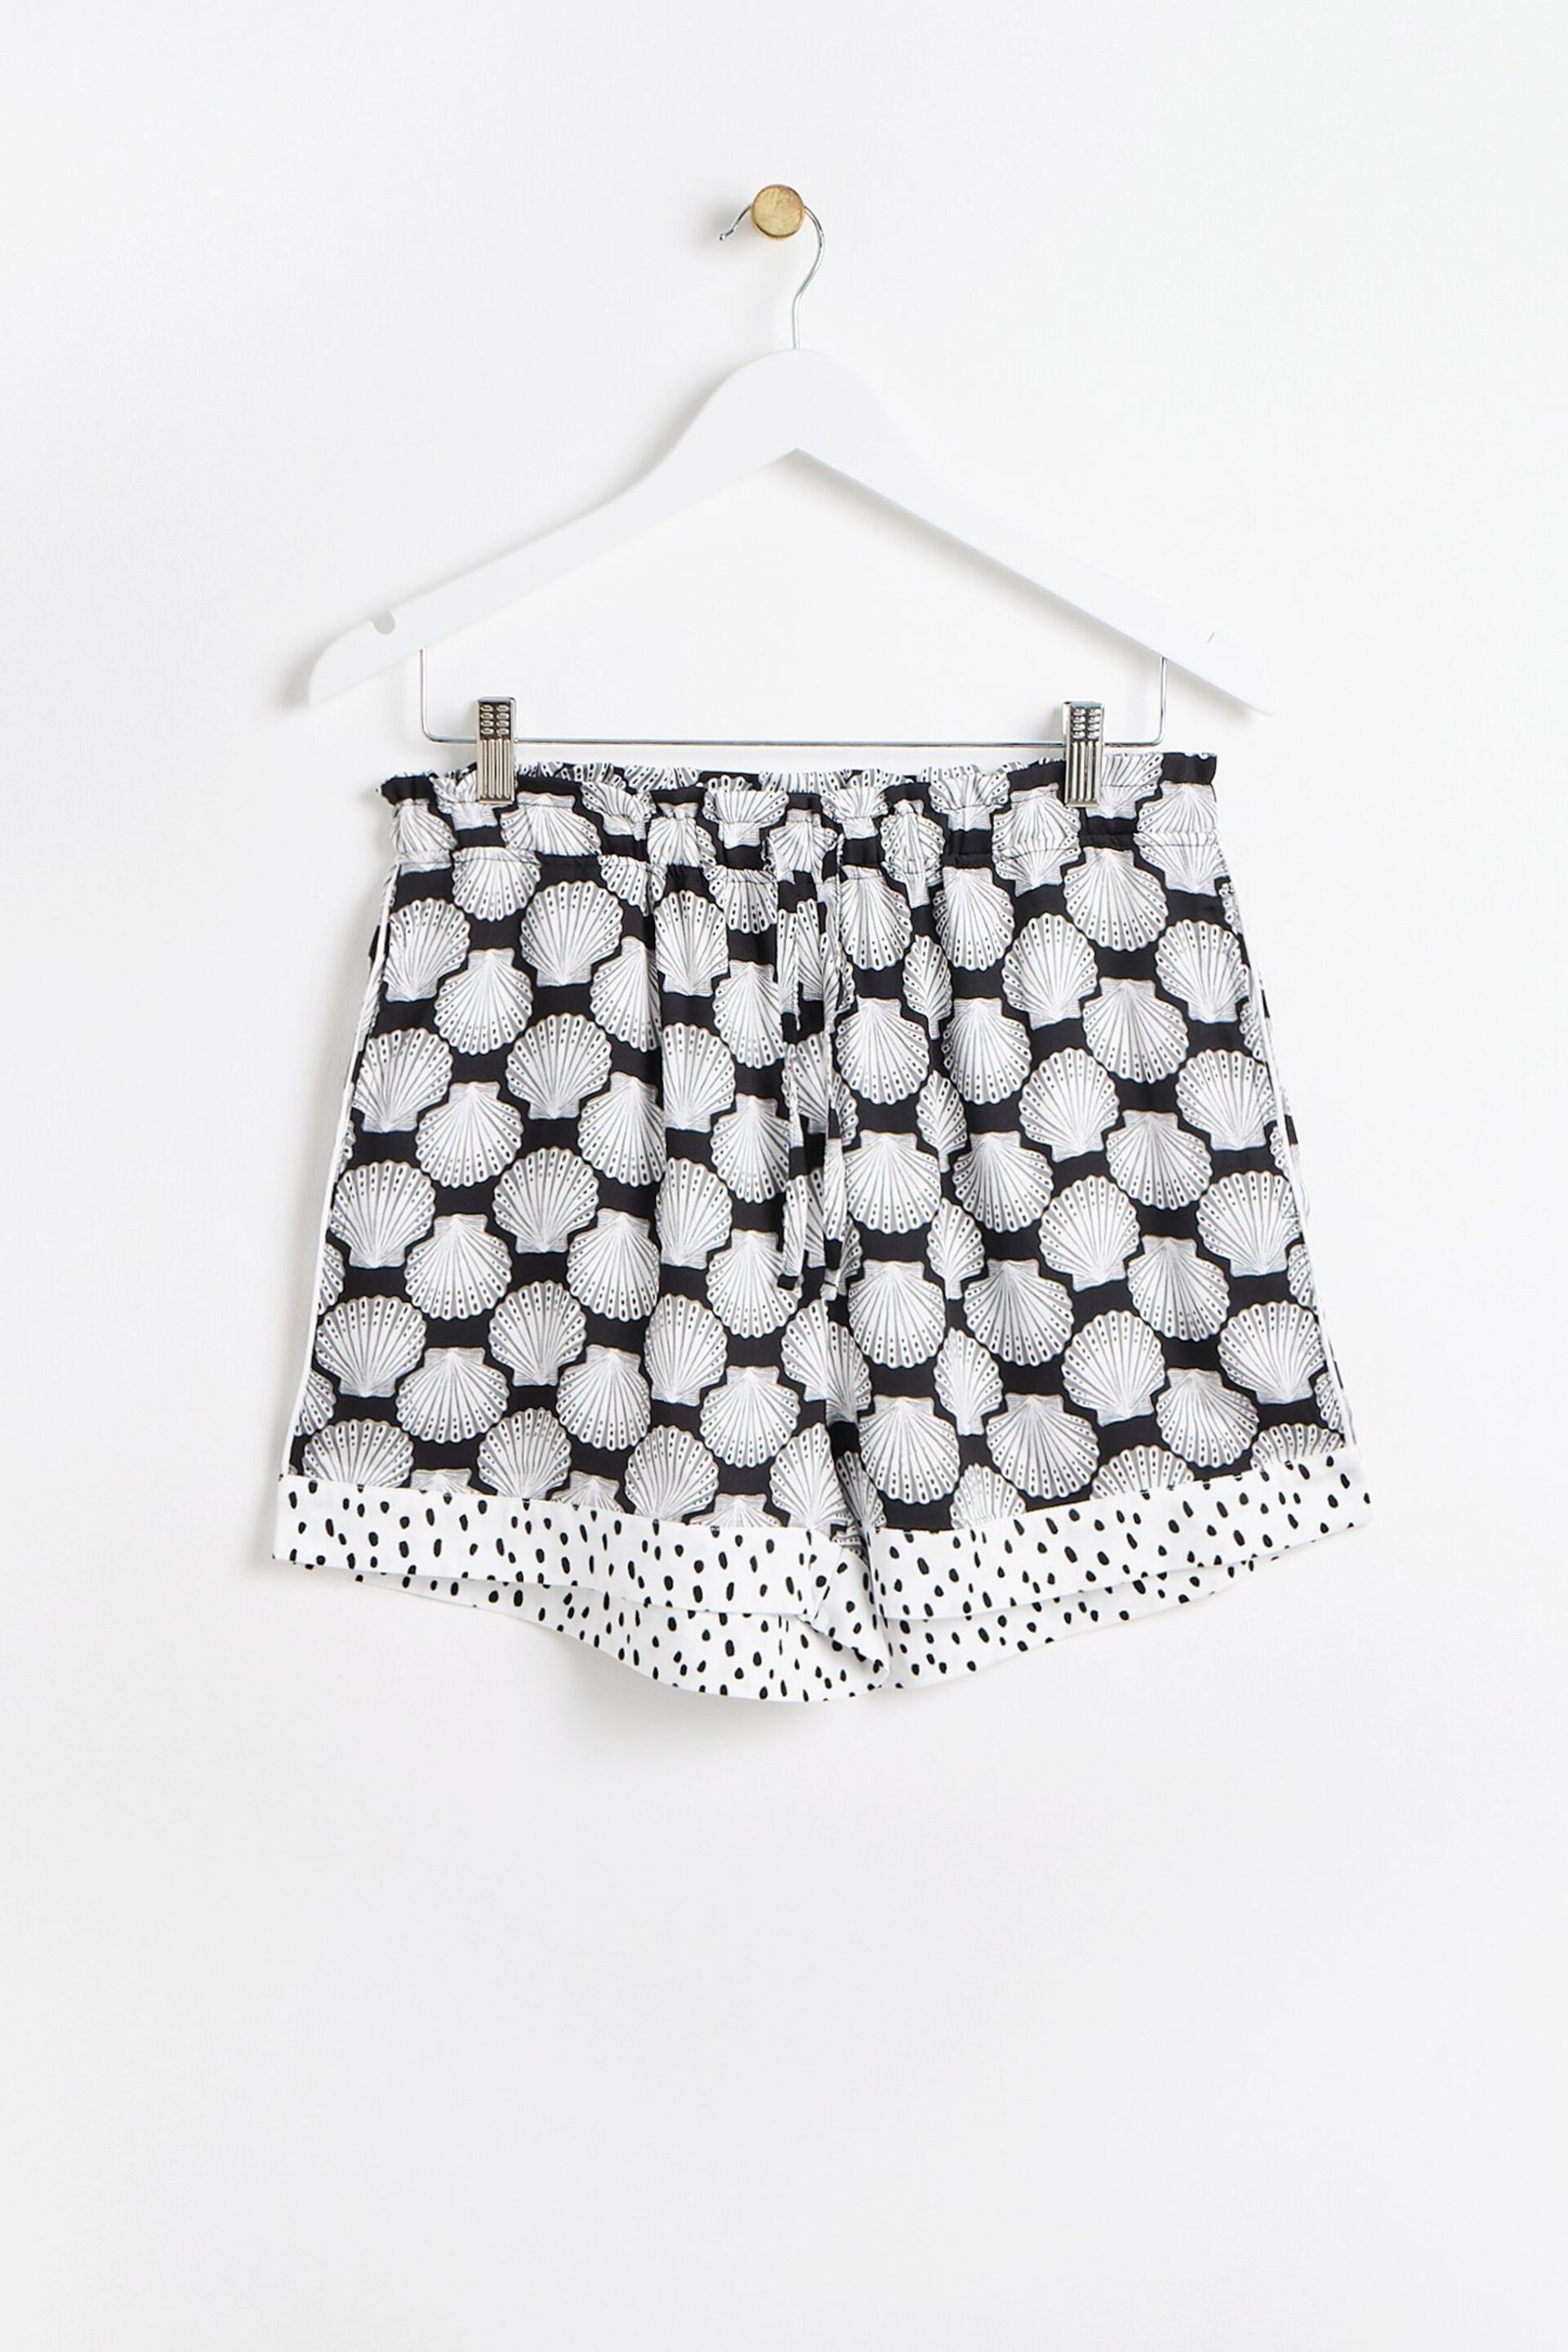 Oliver Bonas Black Shells Top and Shorts Pyjamas Set - Image 5 of 8